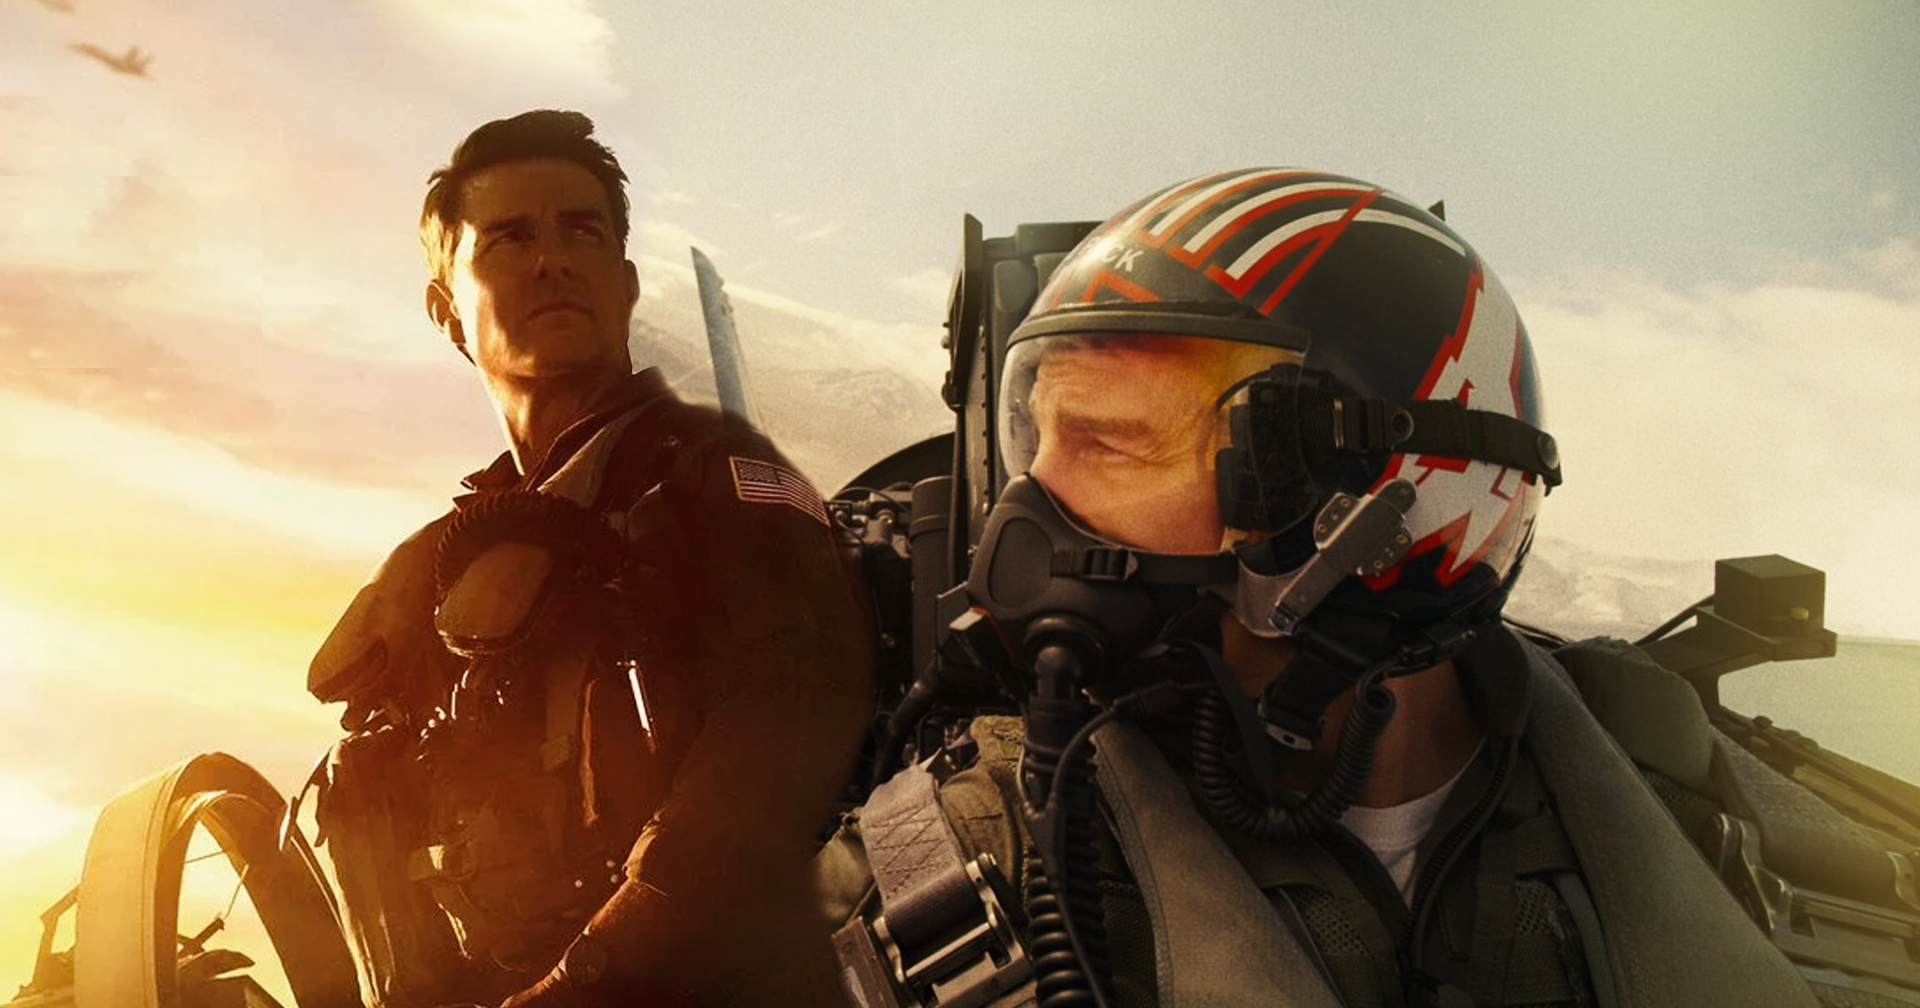 Tom Cruise ถูกสั่งห้ามขับเครื่องบิน F-18 ใน ‘Top Gun: Maverick’ เหตุด้านความปลอดภัย